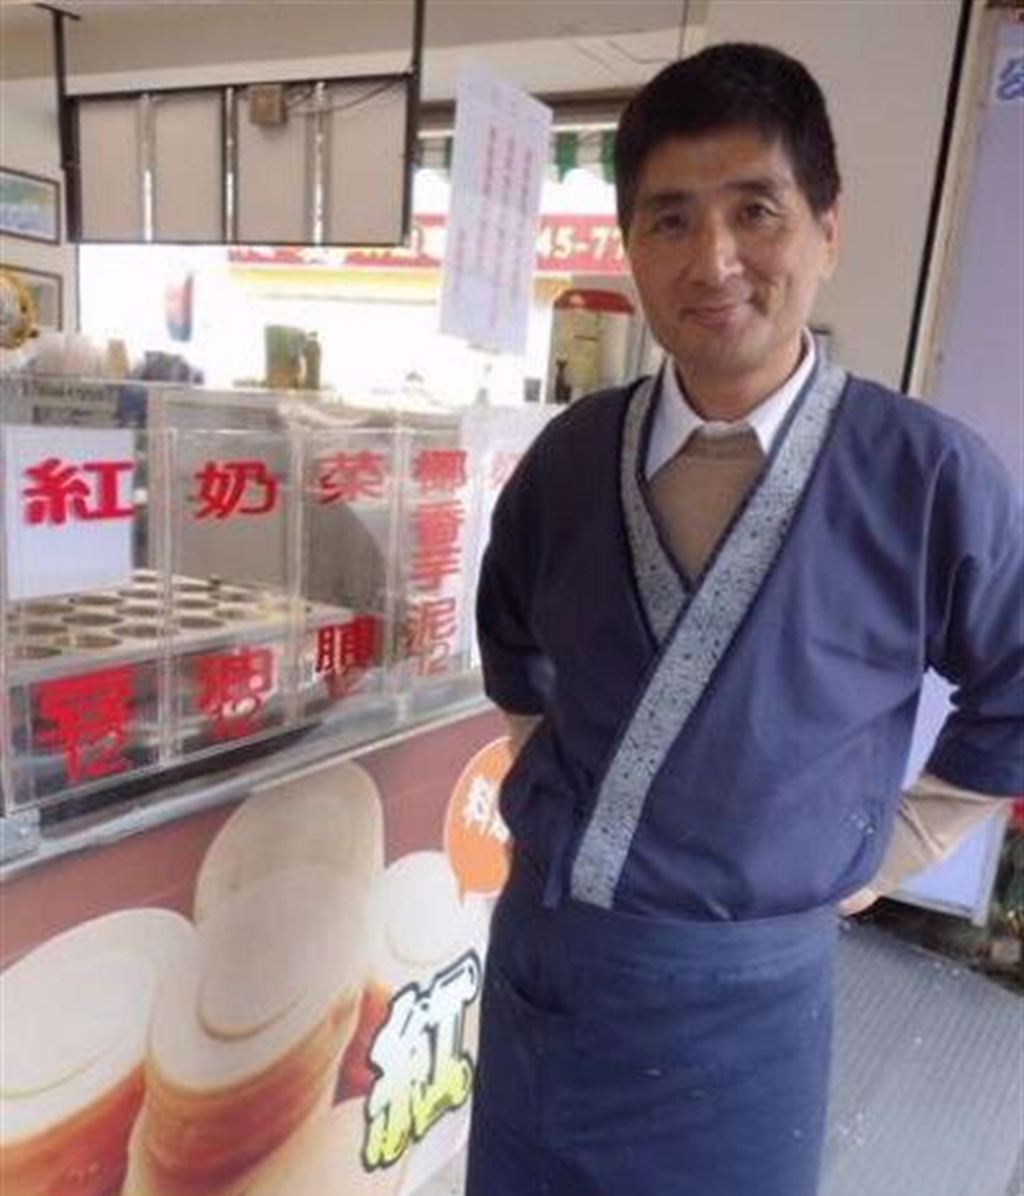 李鳳新幾年前與朋友一起經營了紅豆餅店。(圖/翻攝自中時新聞網)